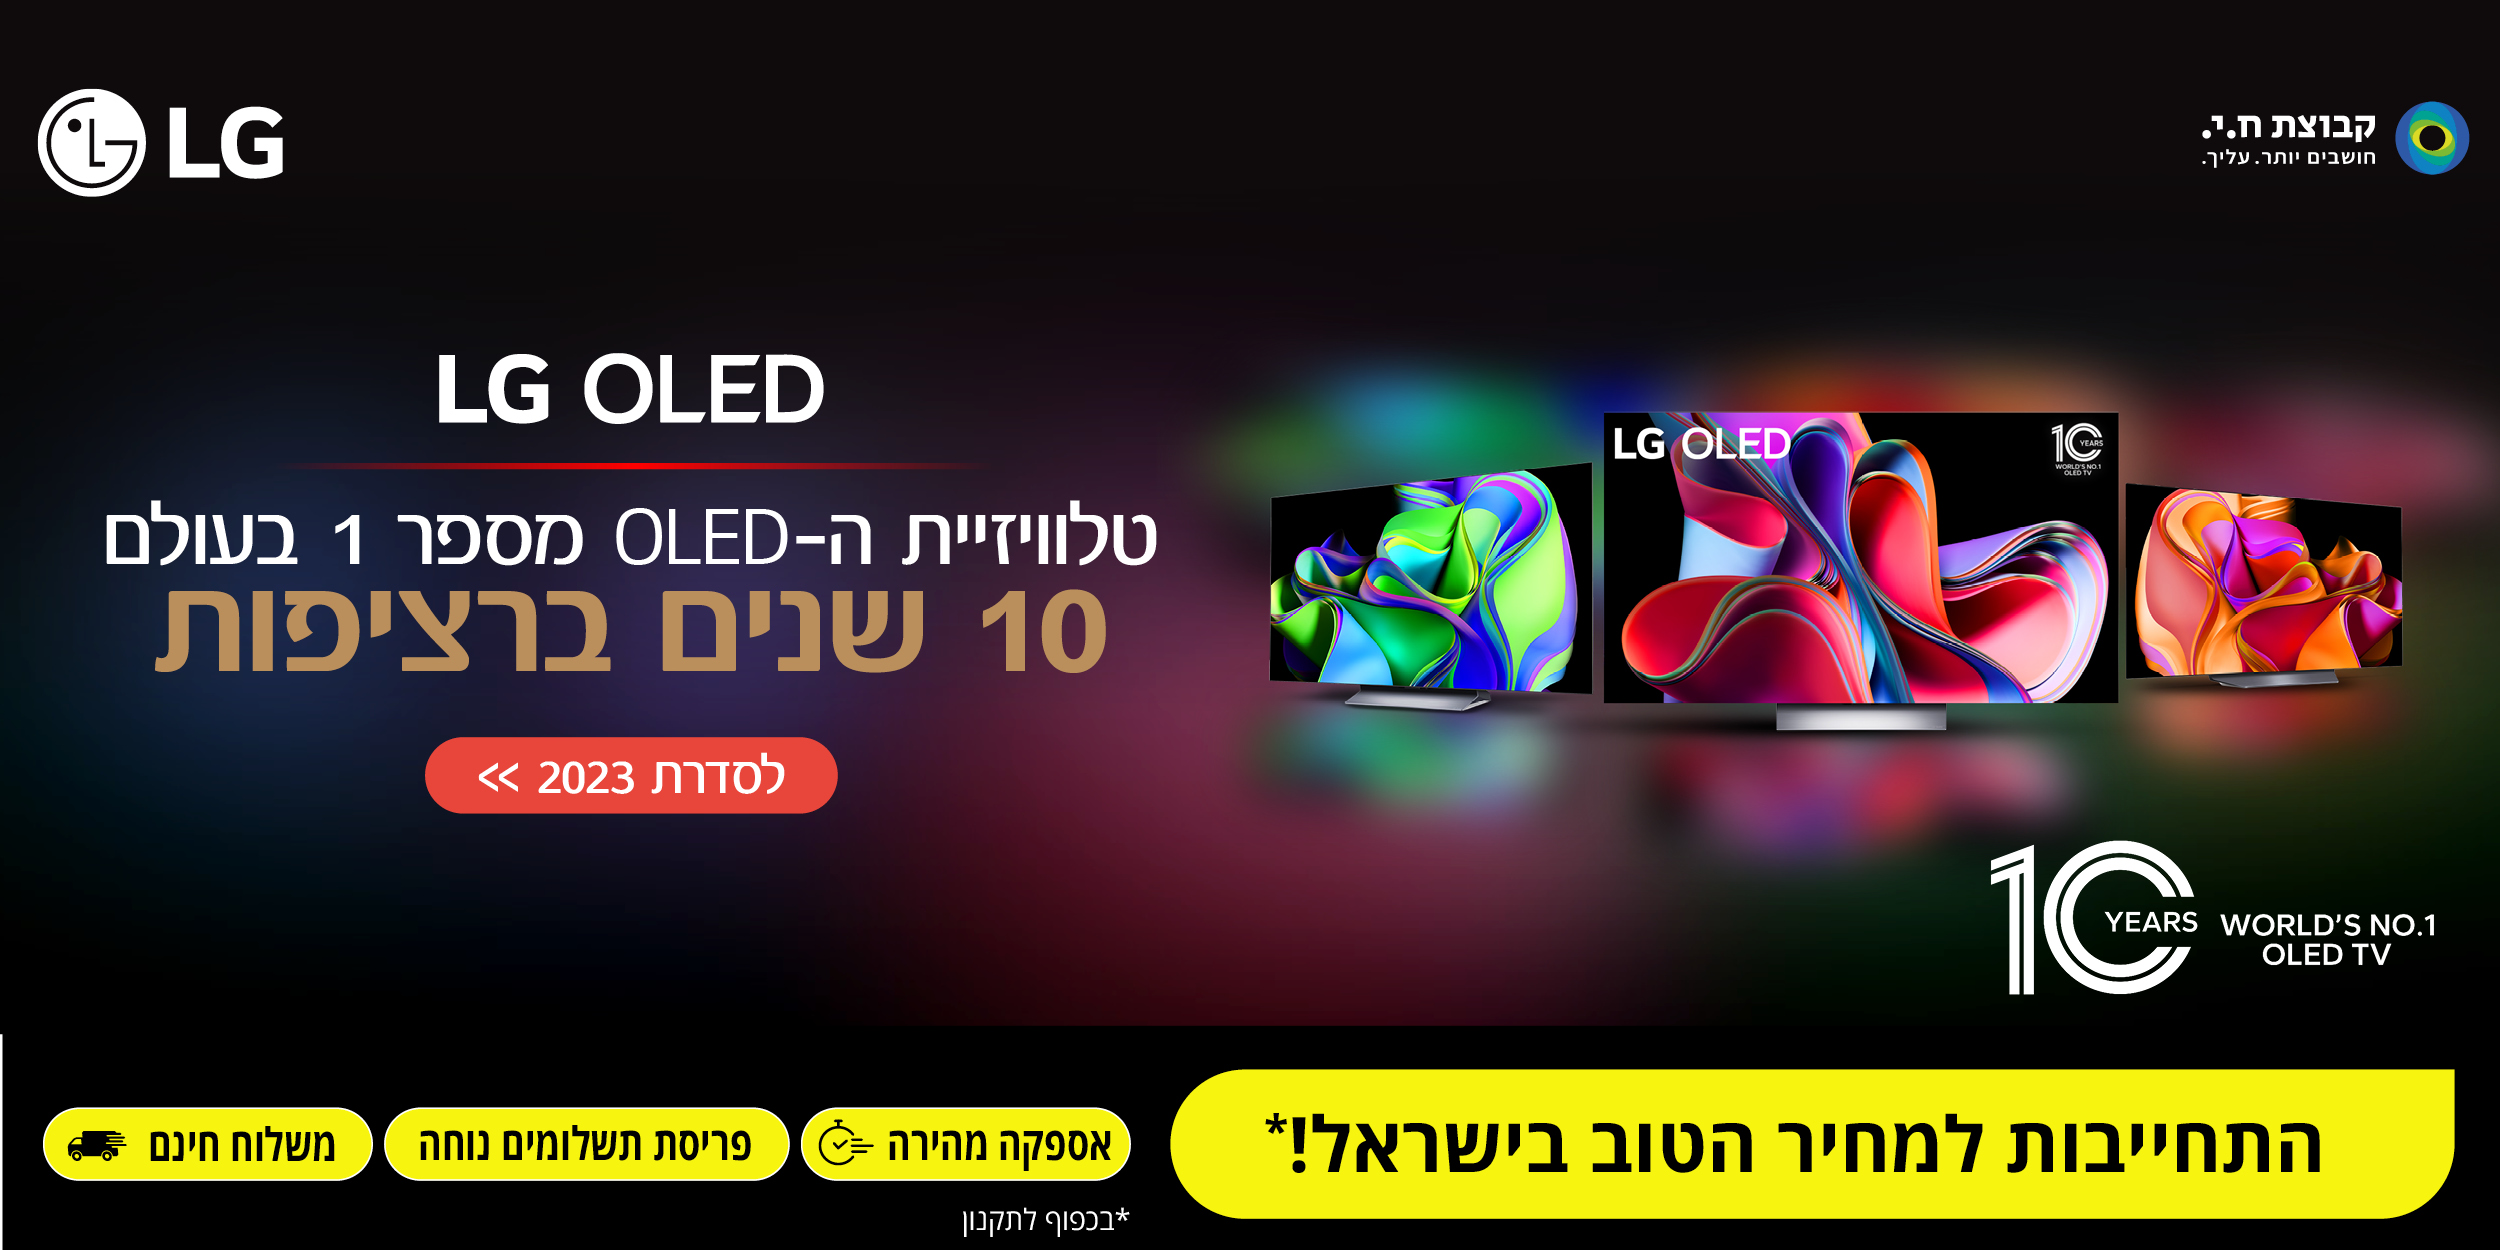 טלוויזית ה-OLED מספר 1 בעולם - LG OLED 10 שנים ברציפות! התחייבות למחיר הטוב בישראל!* אספקה מהירה | פריסת תשלומים נוחה | משלוח חינם. *בכפוף לתקנון